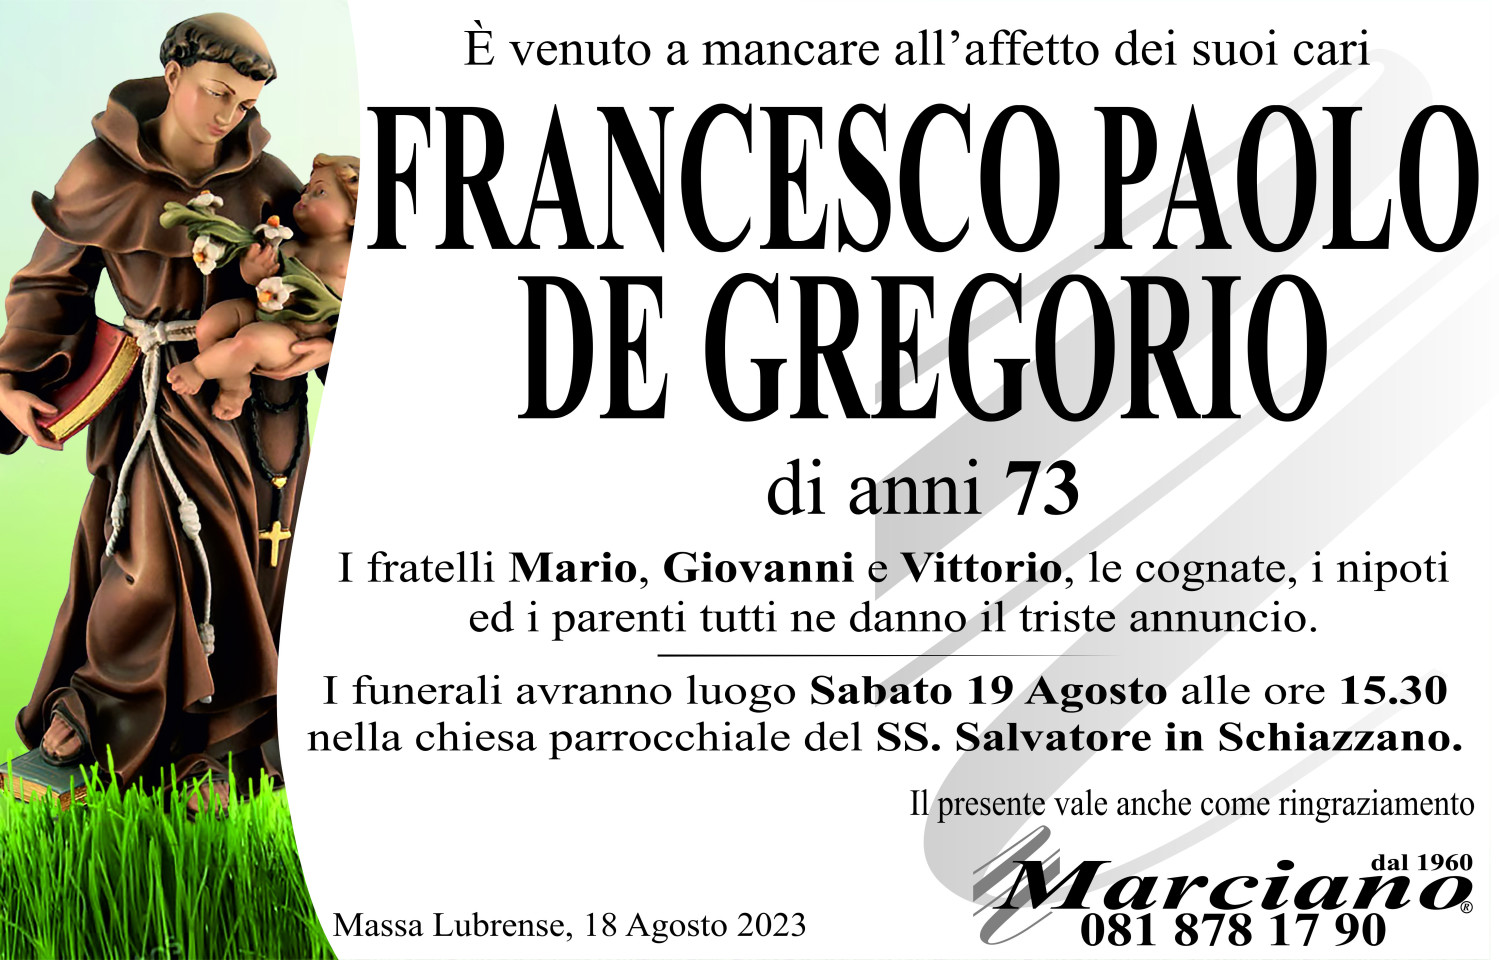 Onoranze funebri Marciano S.N.C. di Ferdinando Marciano